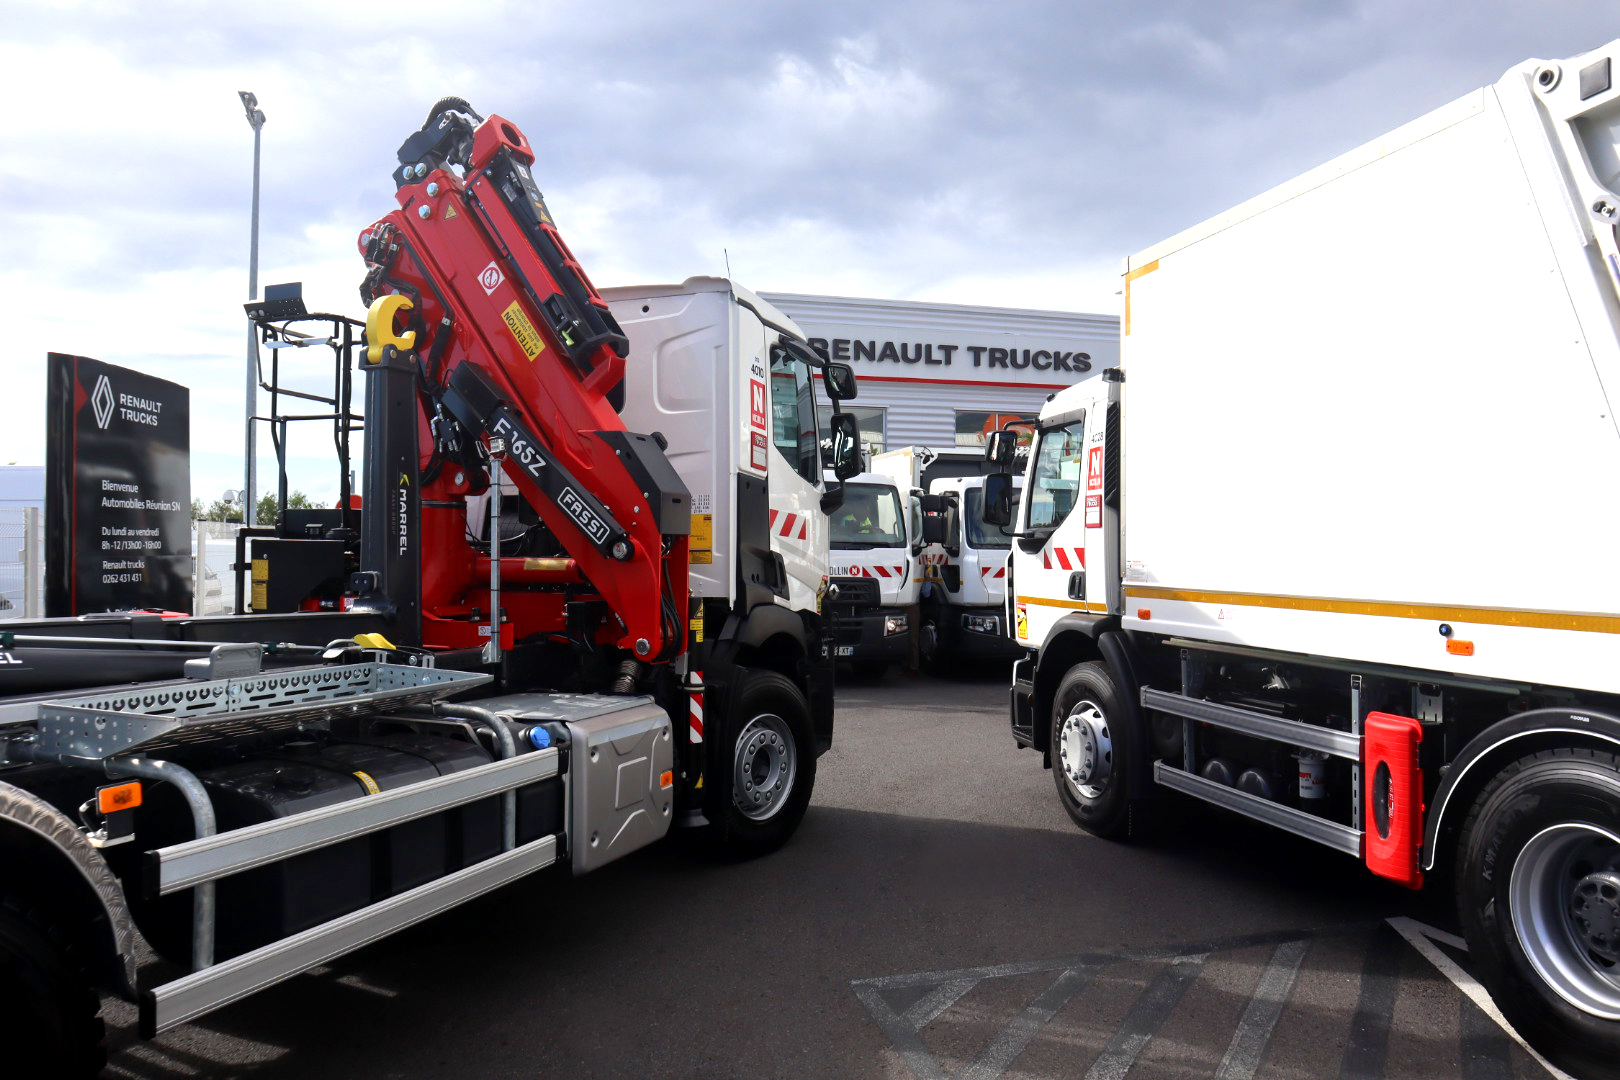 camion nicollin renault trucks partenariat flotte de véhicules D19 Wide Benne Ordures Ménagères (BOM) et des amplirolls